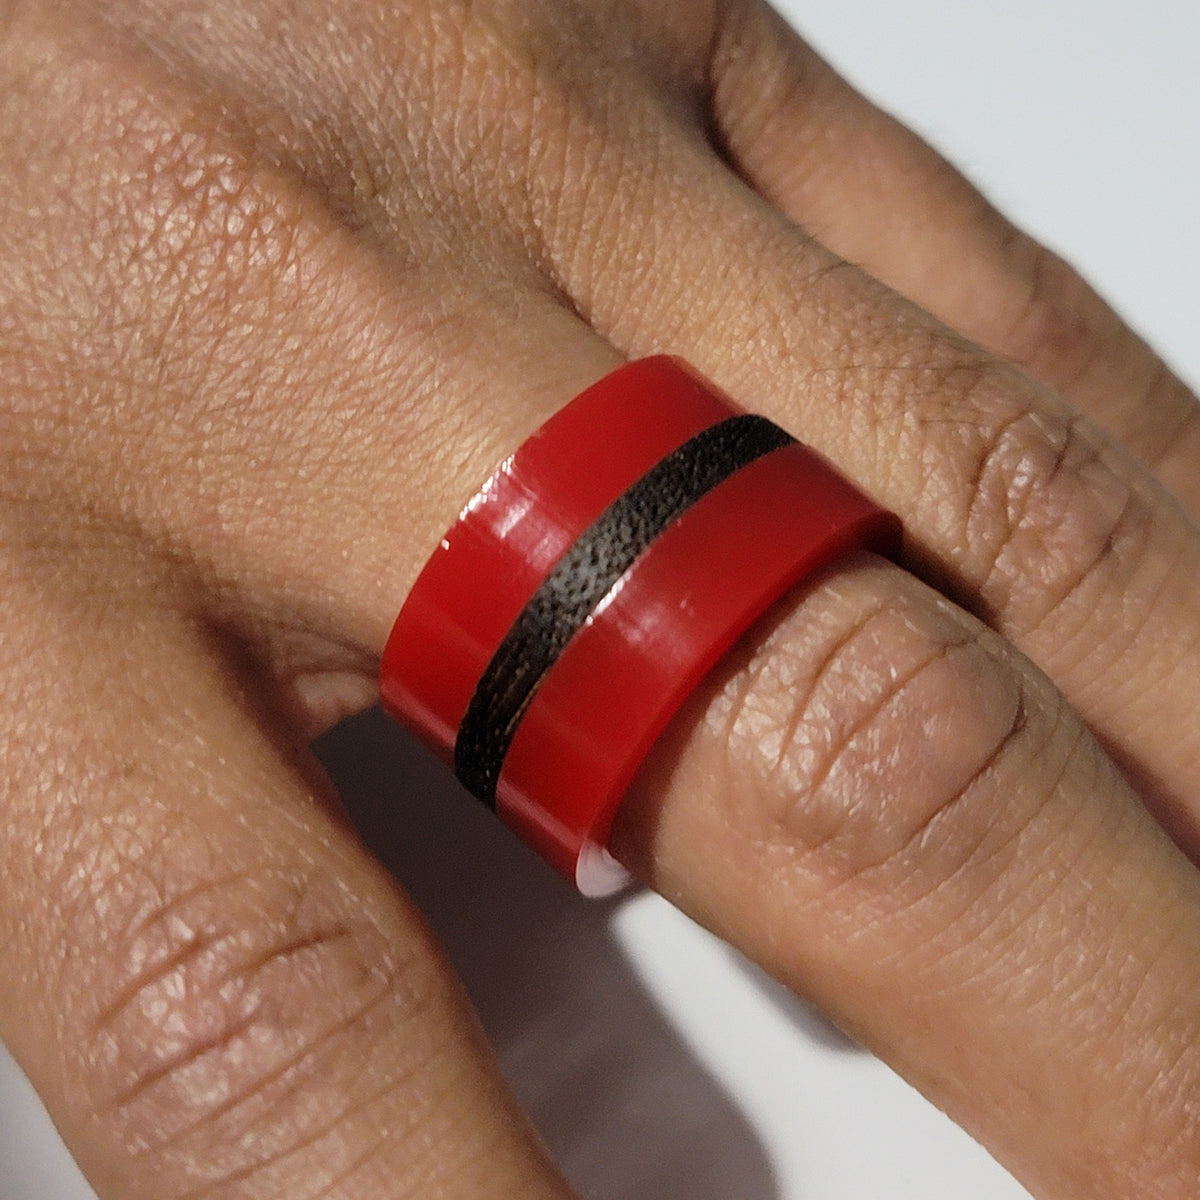 Hand Model For Rings And Bracelets/Ring Display/Bracelet Holder